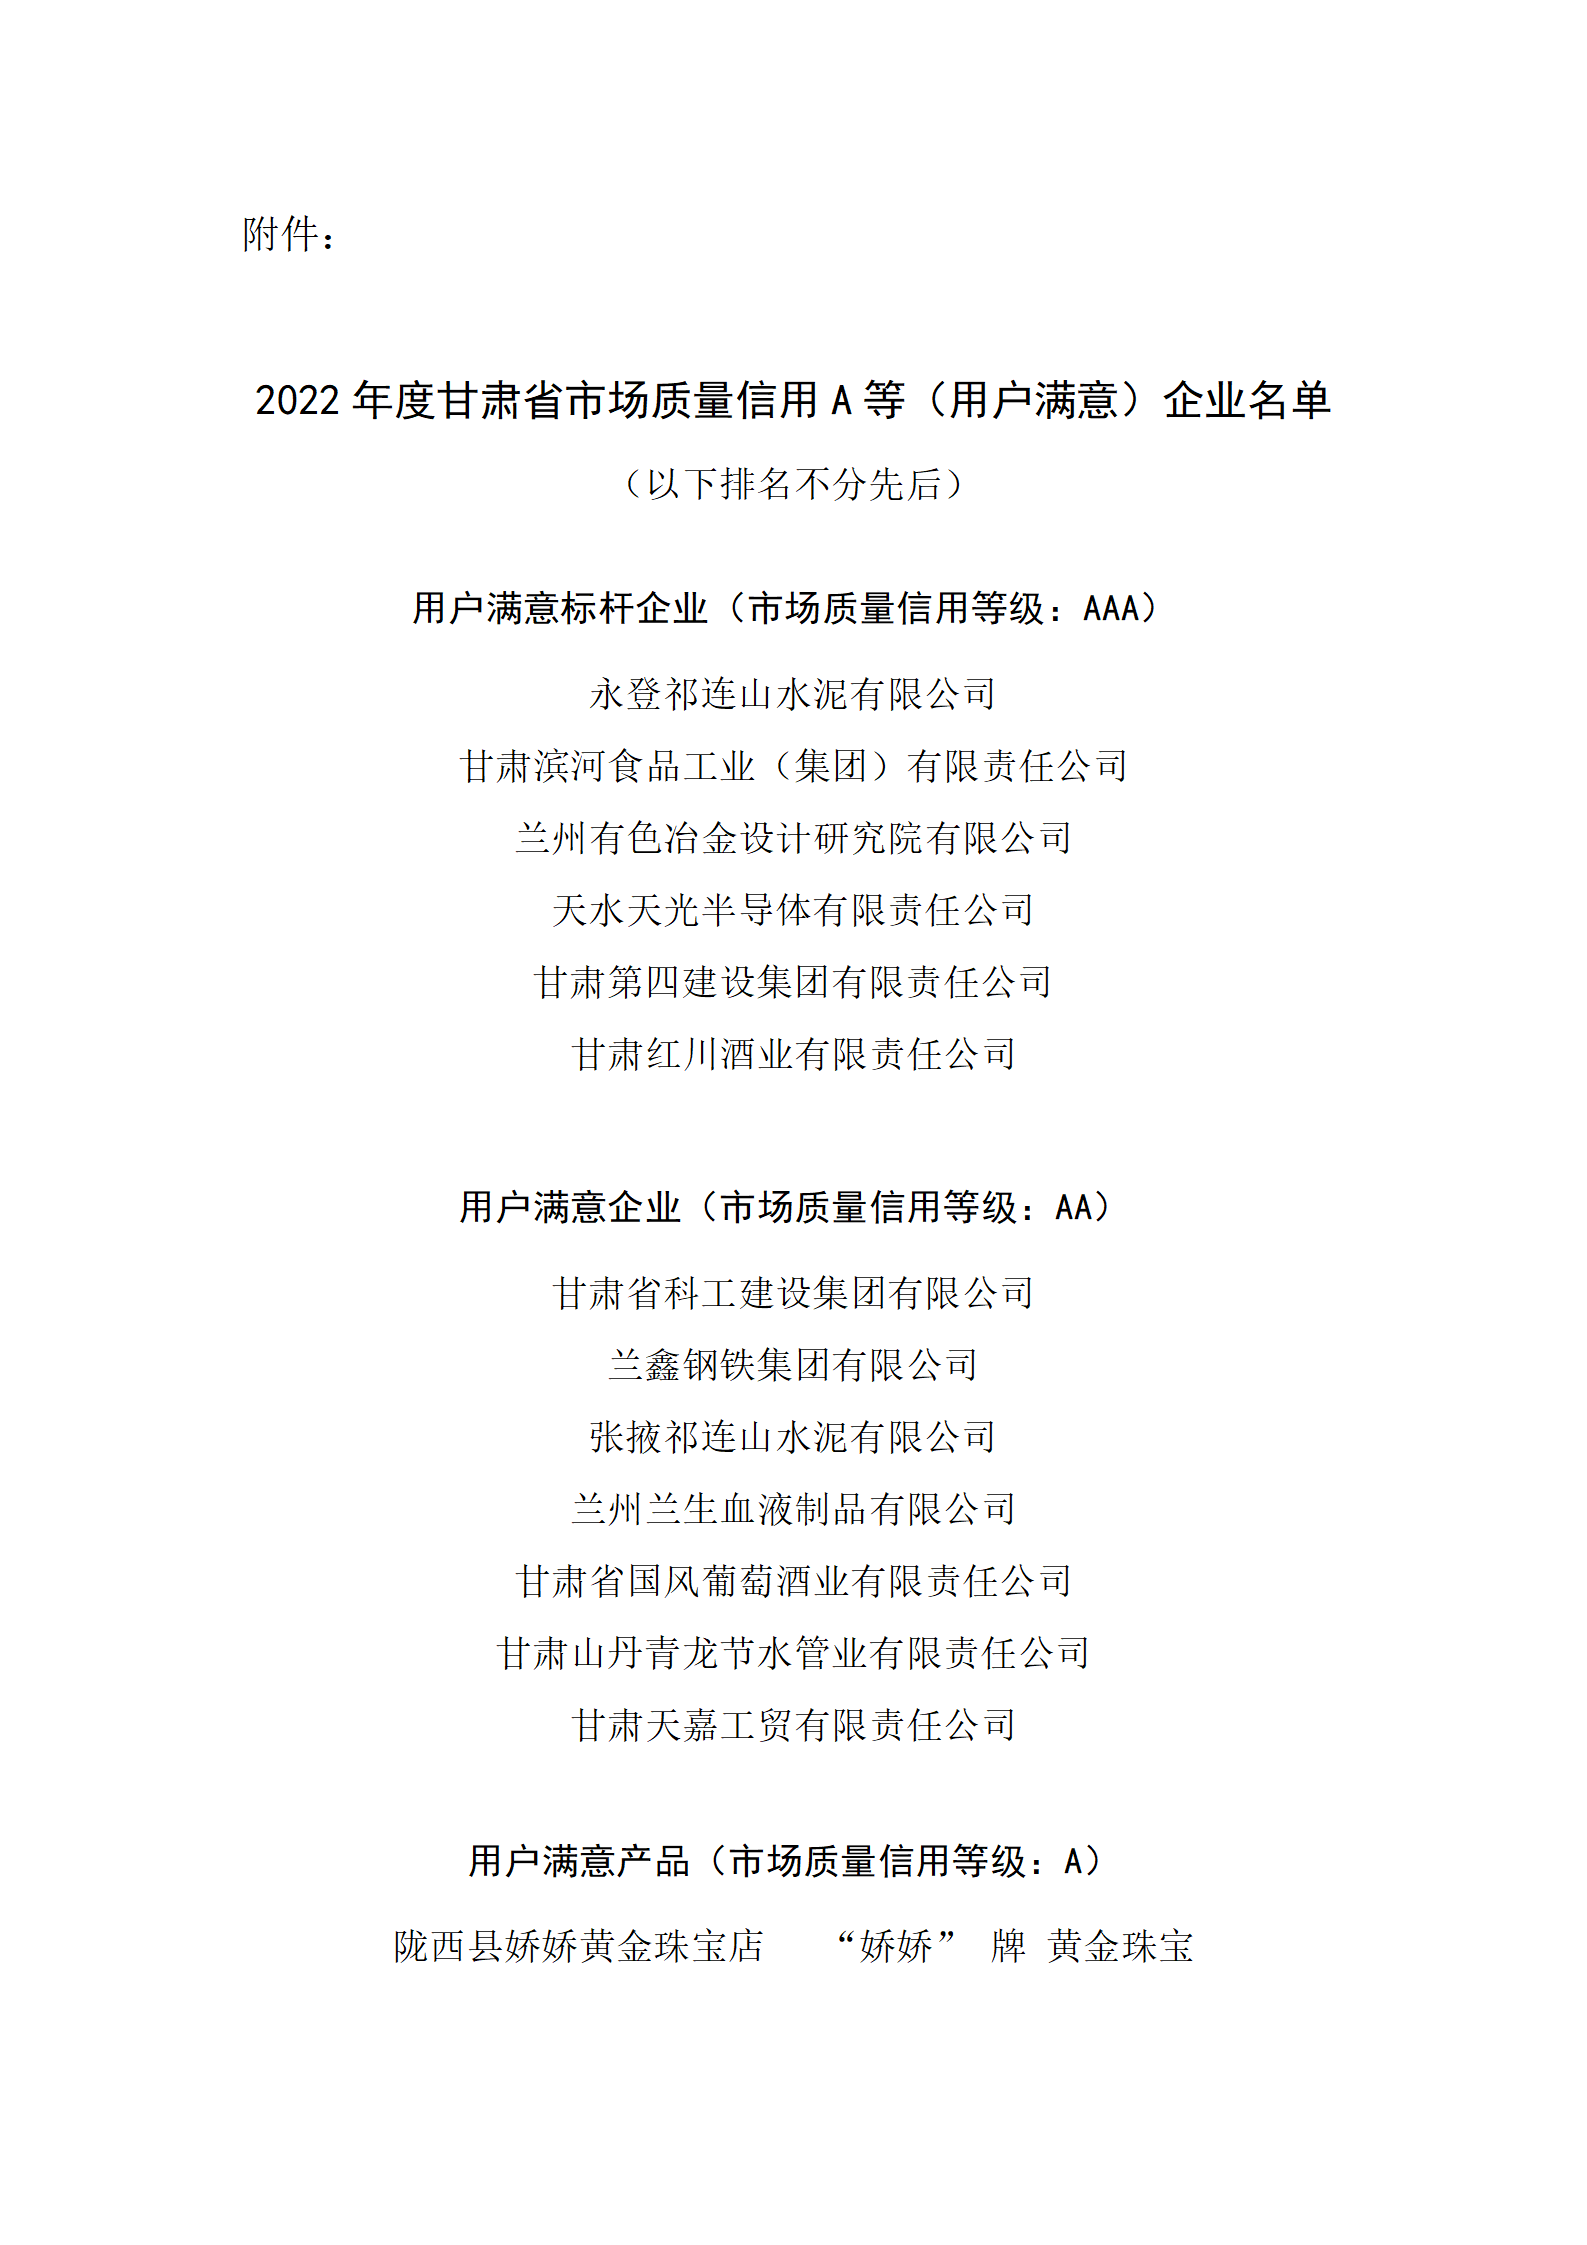 关于甘肃省2022年度市场质量信用等级评价结果的公示通知_03.png